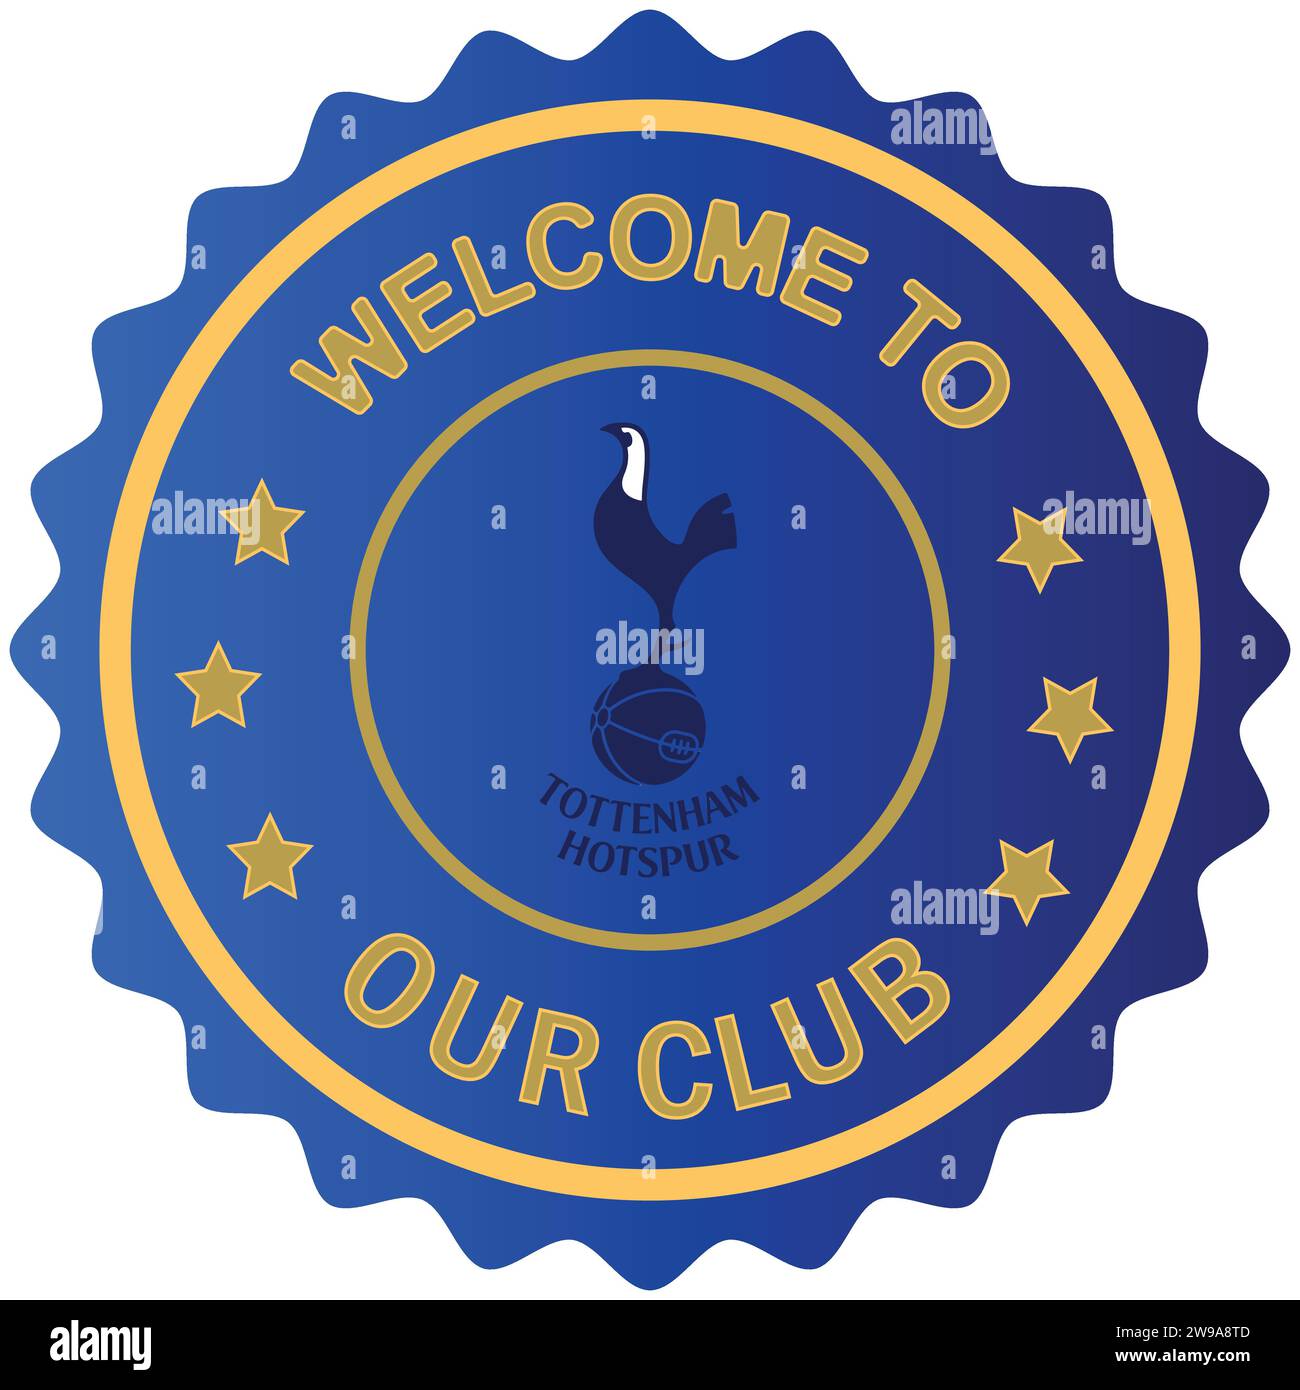 Benvenuto al Tottenham Hotspur FC, il timbro colorato e il sigillo della squadra di calcio professionistica inglese Vector Illustration Abstract Editable image Illustrazione Vettoriale